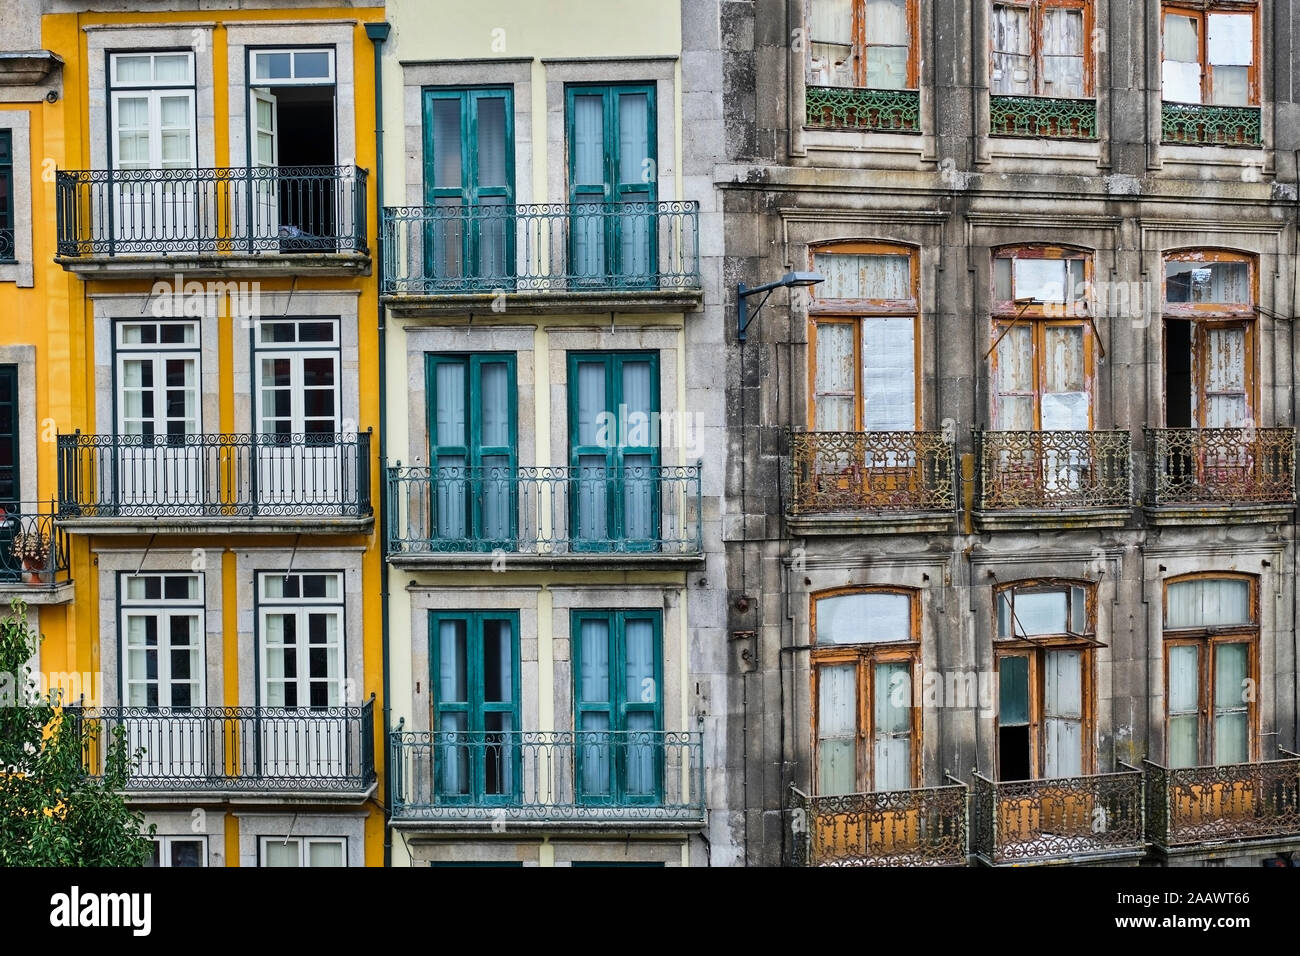 Portugal, Porto, vista frontal del renovado y descuidadas fachadas Foto de stock